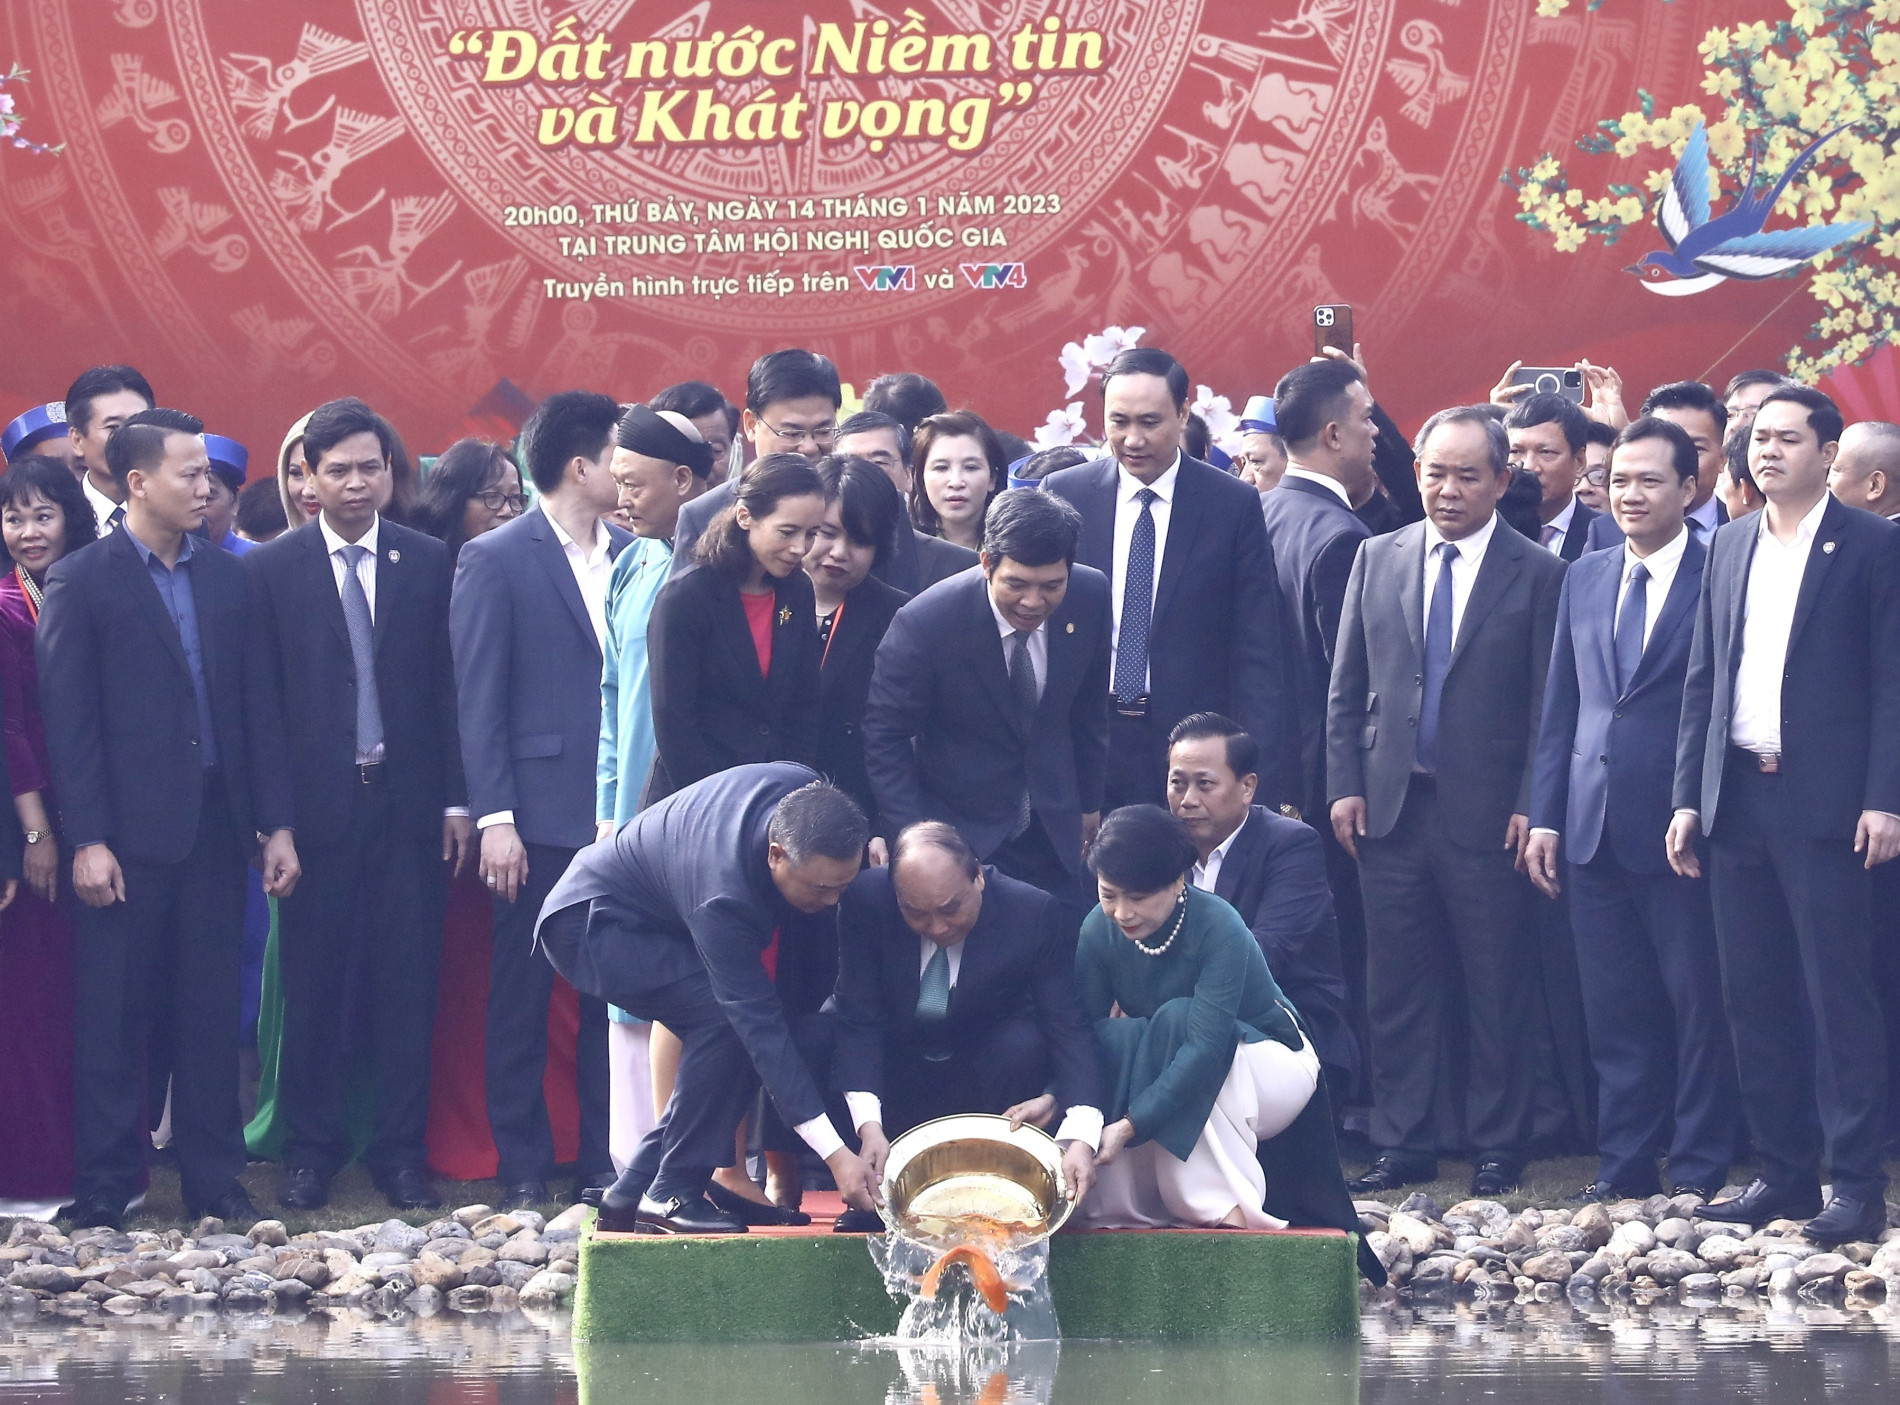 Chủ tịch nước Nguyễn Xuân Phúc thả cá chép tiễn ông Công, ông Táo - Ảnh 1.